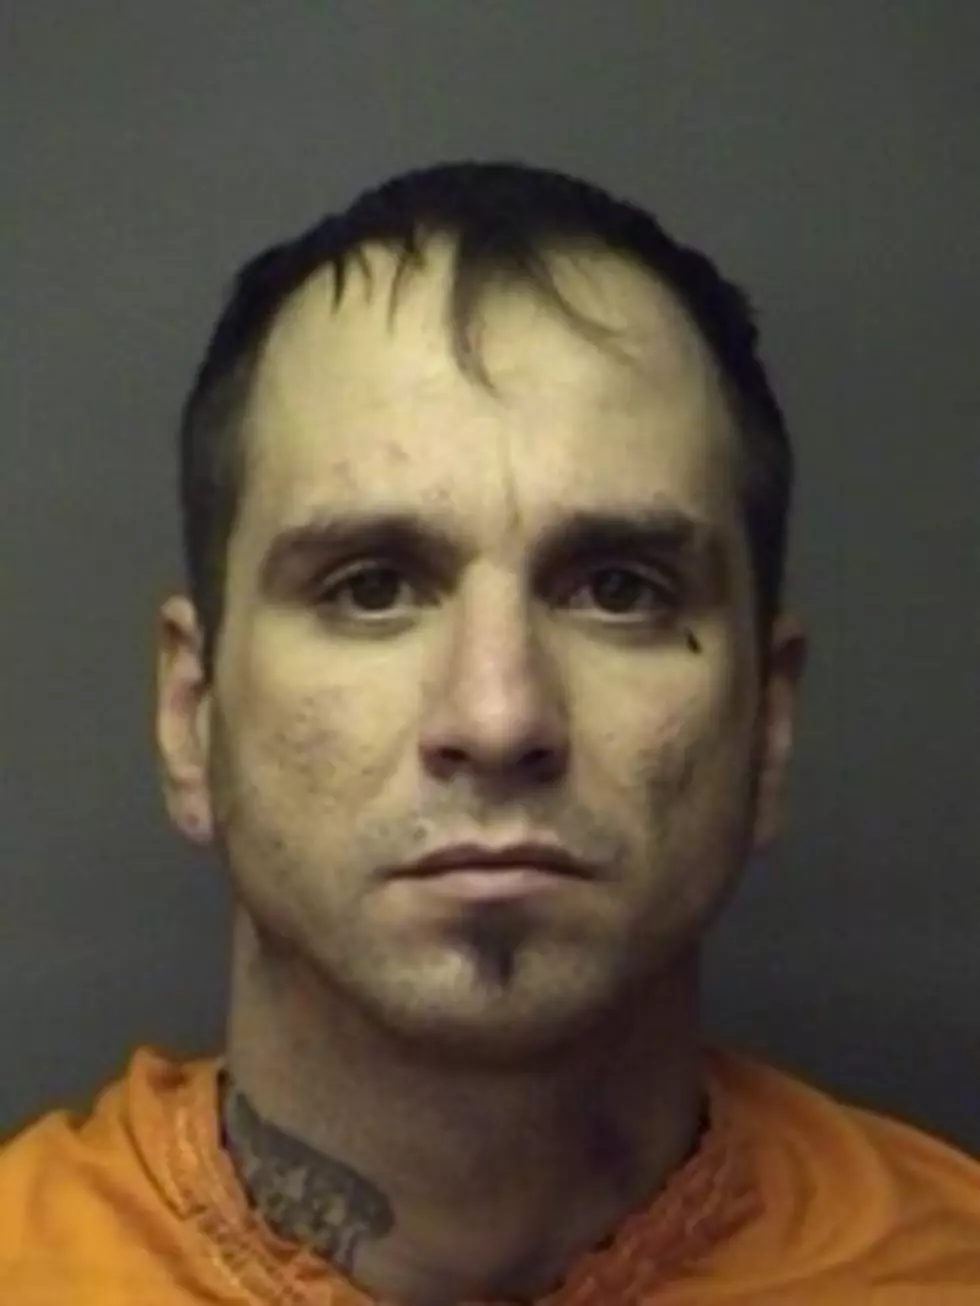 Burkburnett Man Arrested After Brutal Assault on Woman